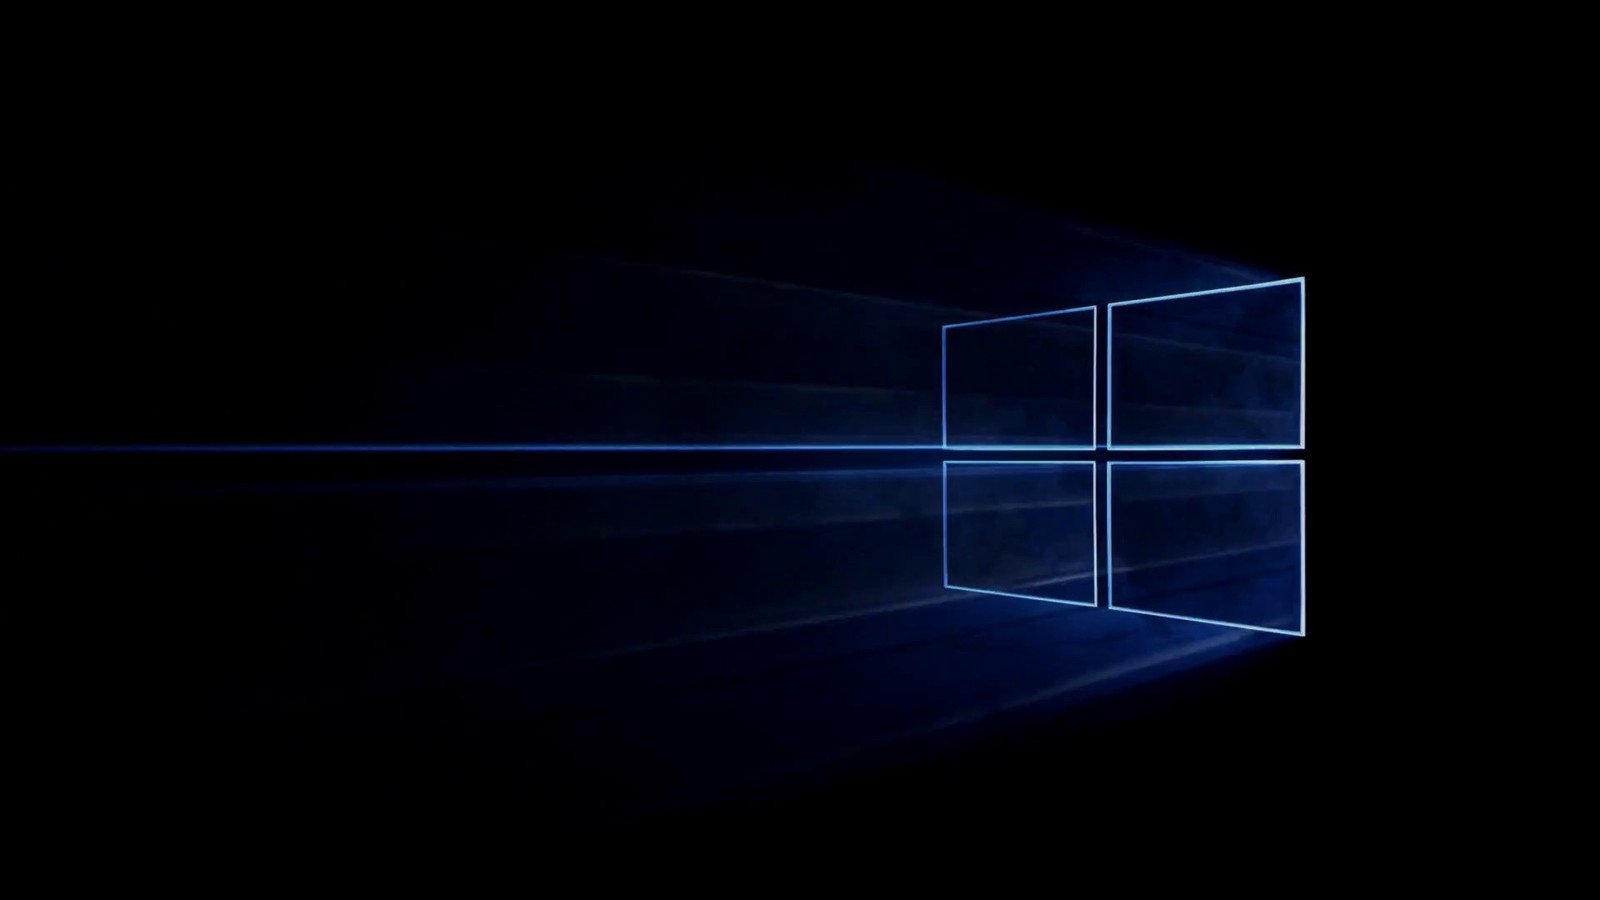 Windows 10 Redstone 3 sẽ giới thiệu một ngôn ngữ thiết kế mới, có tên là Project NEON